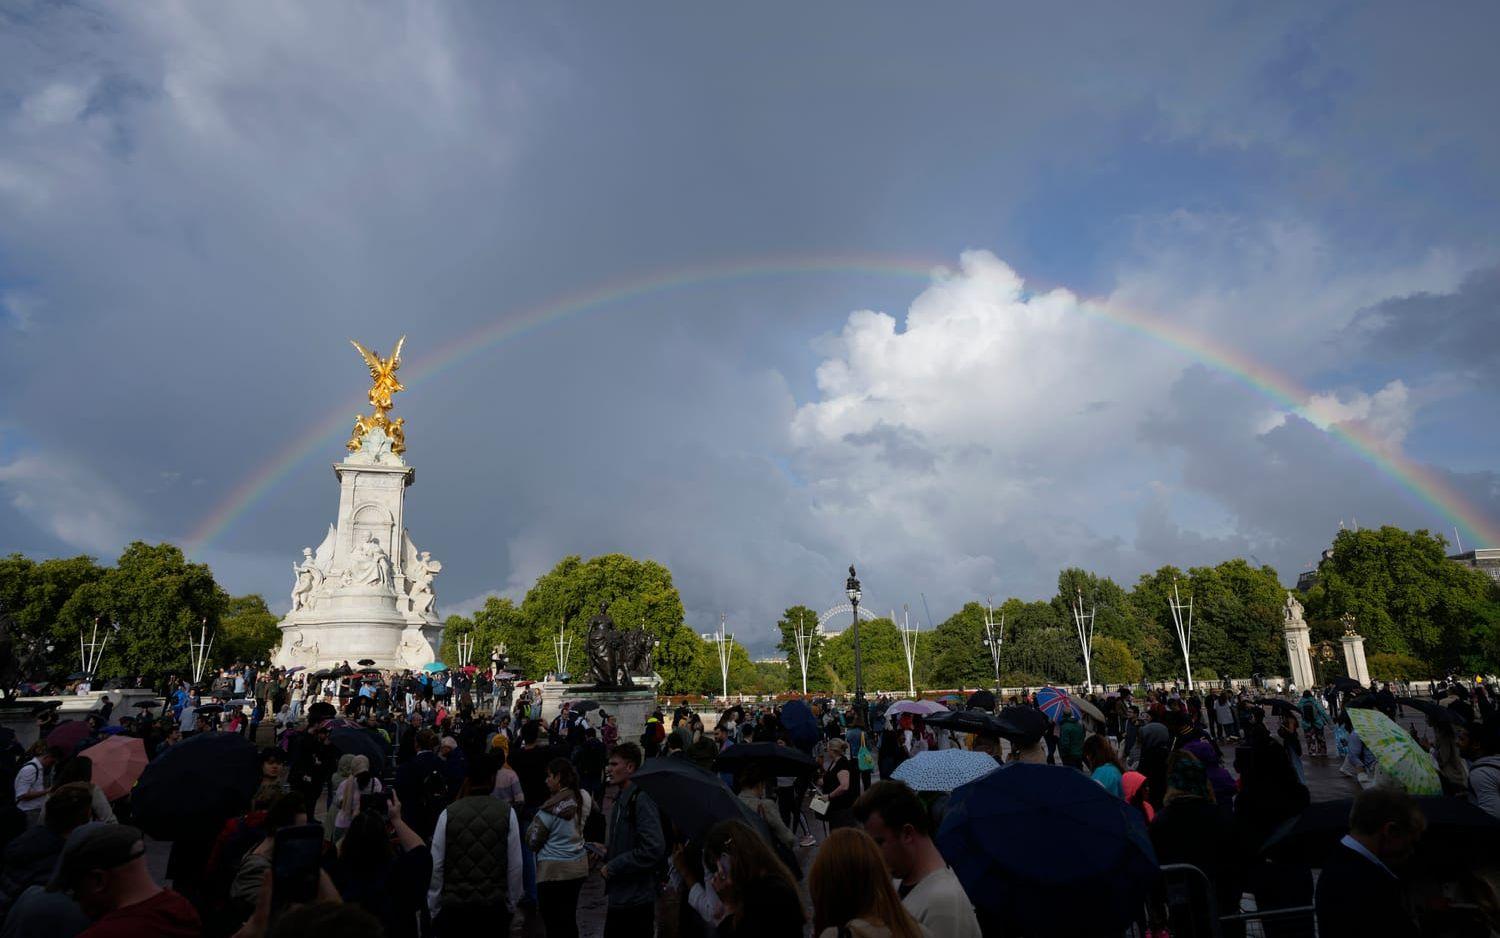 Det hade regnat under dagen i London. När flaggan på Buckingham Palace halades på halv stång syntes en regnbåge över dem som samlats. 